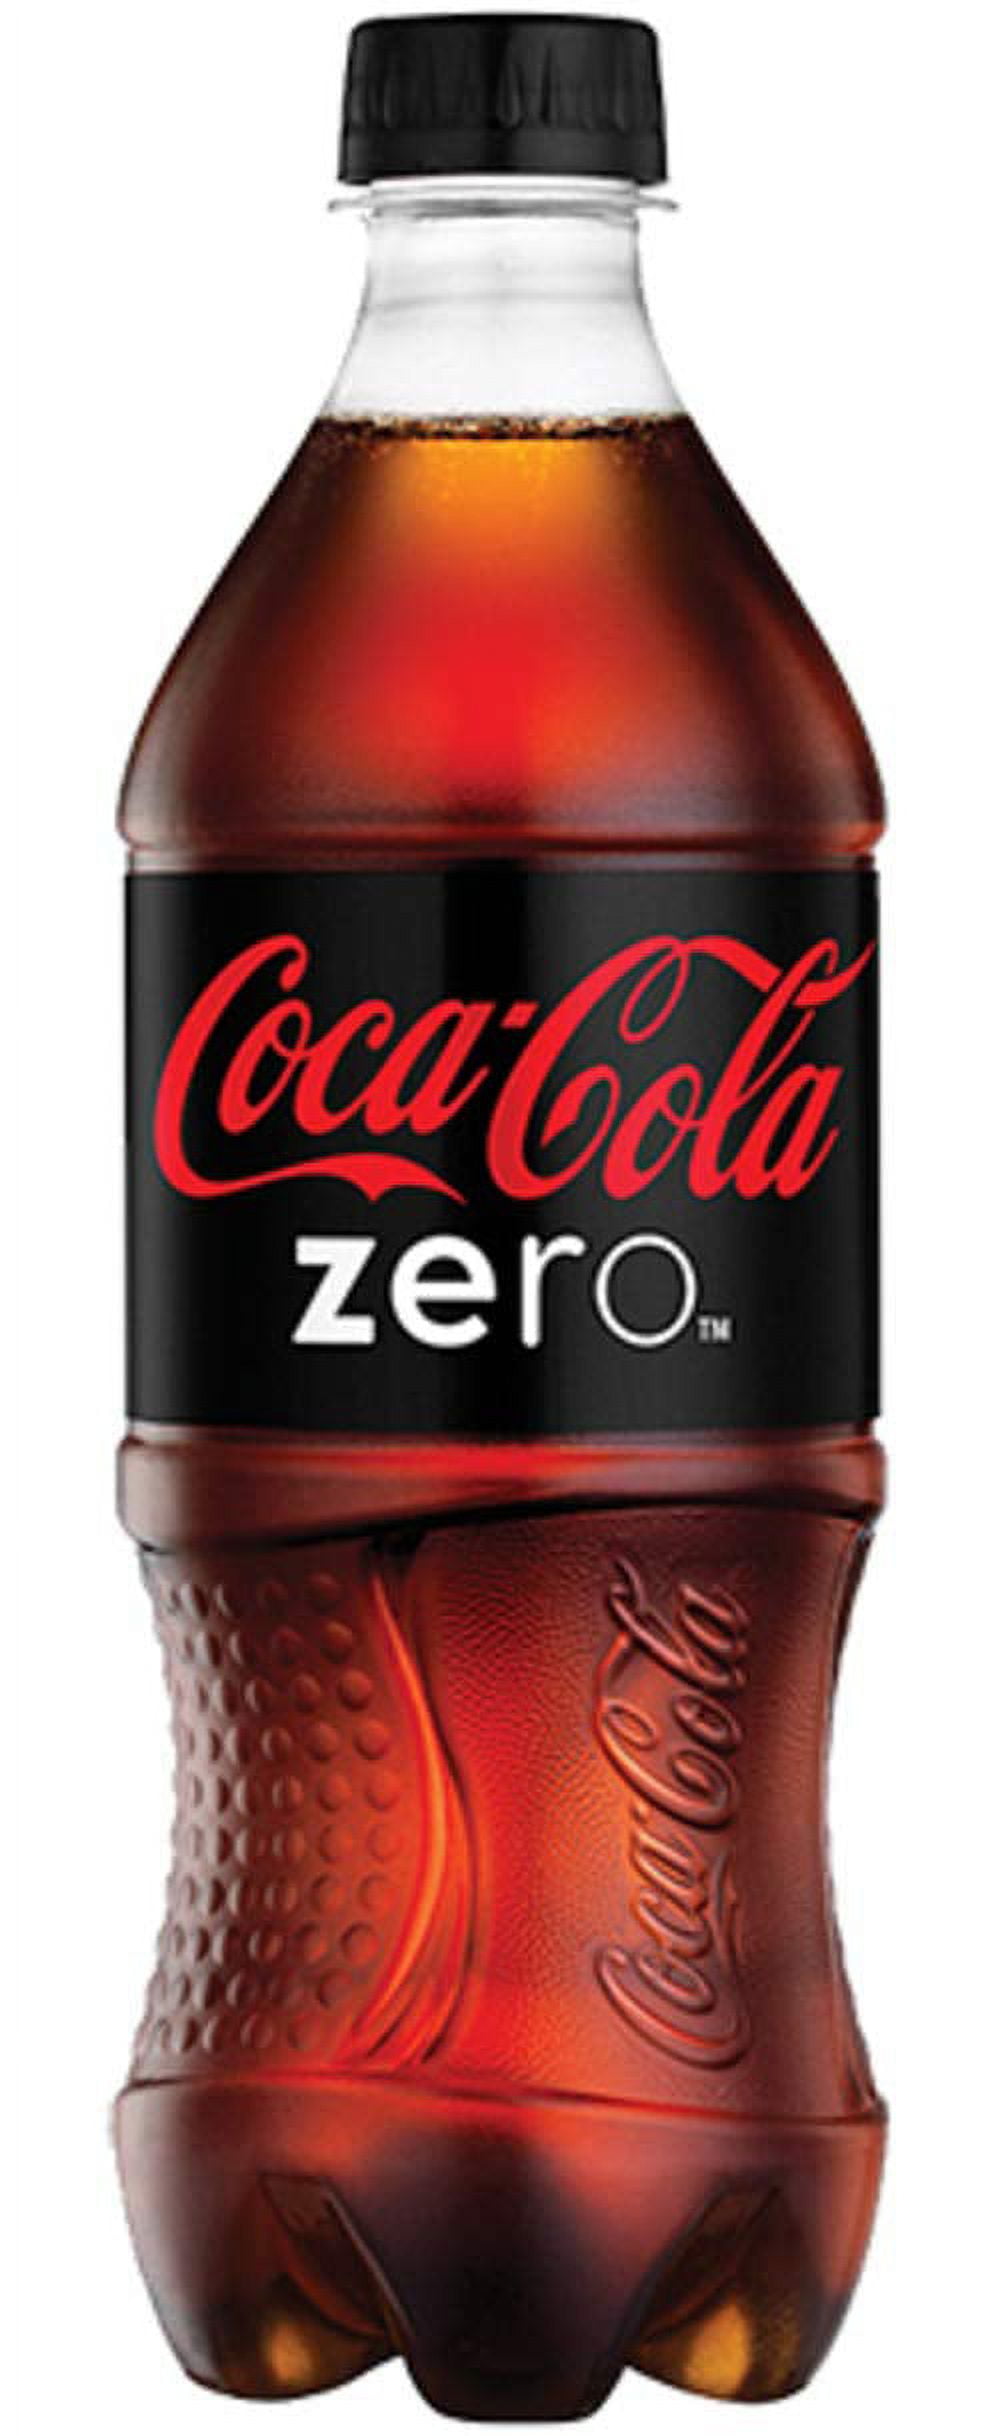 Drakes Online Woodcroft - Coca Cola Zero Sugar Glass Bottles 4x330ml